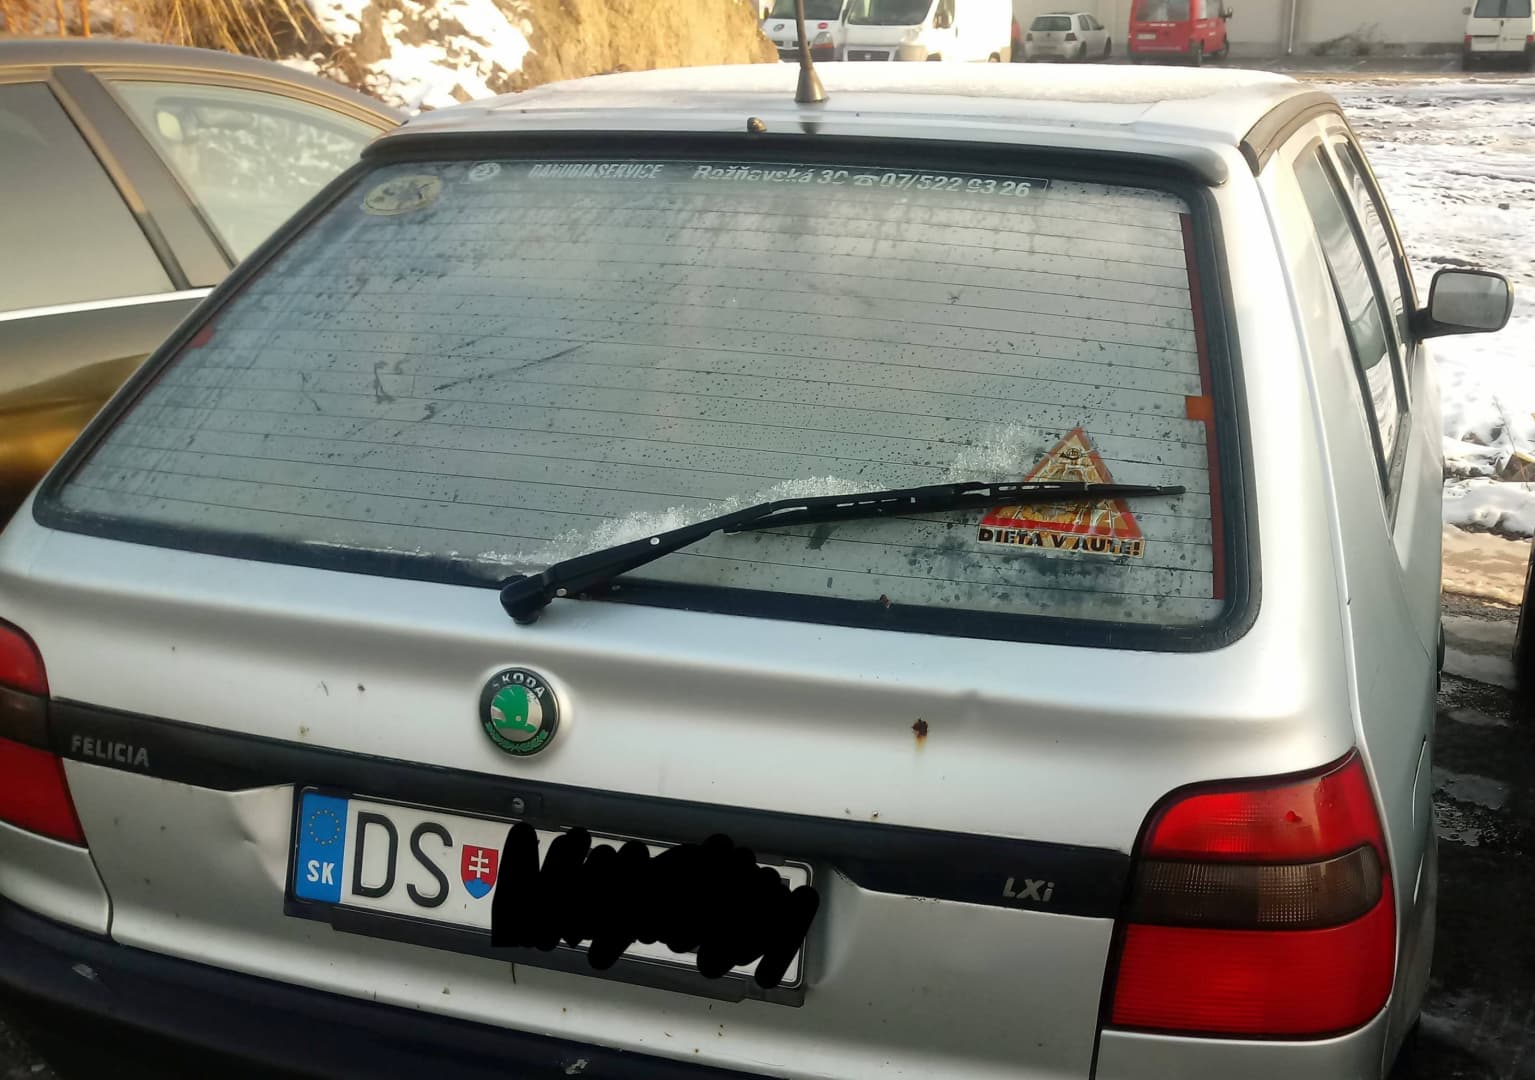 Bunkó feliciás nehezítette meg egy autós életét Dunaszerdahelyen (FOTÓK)